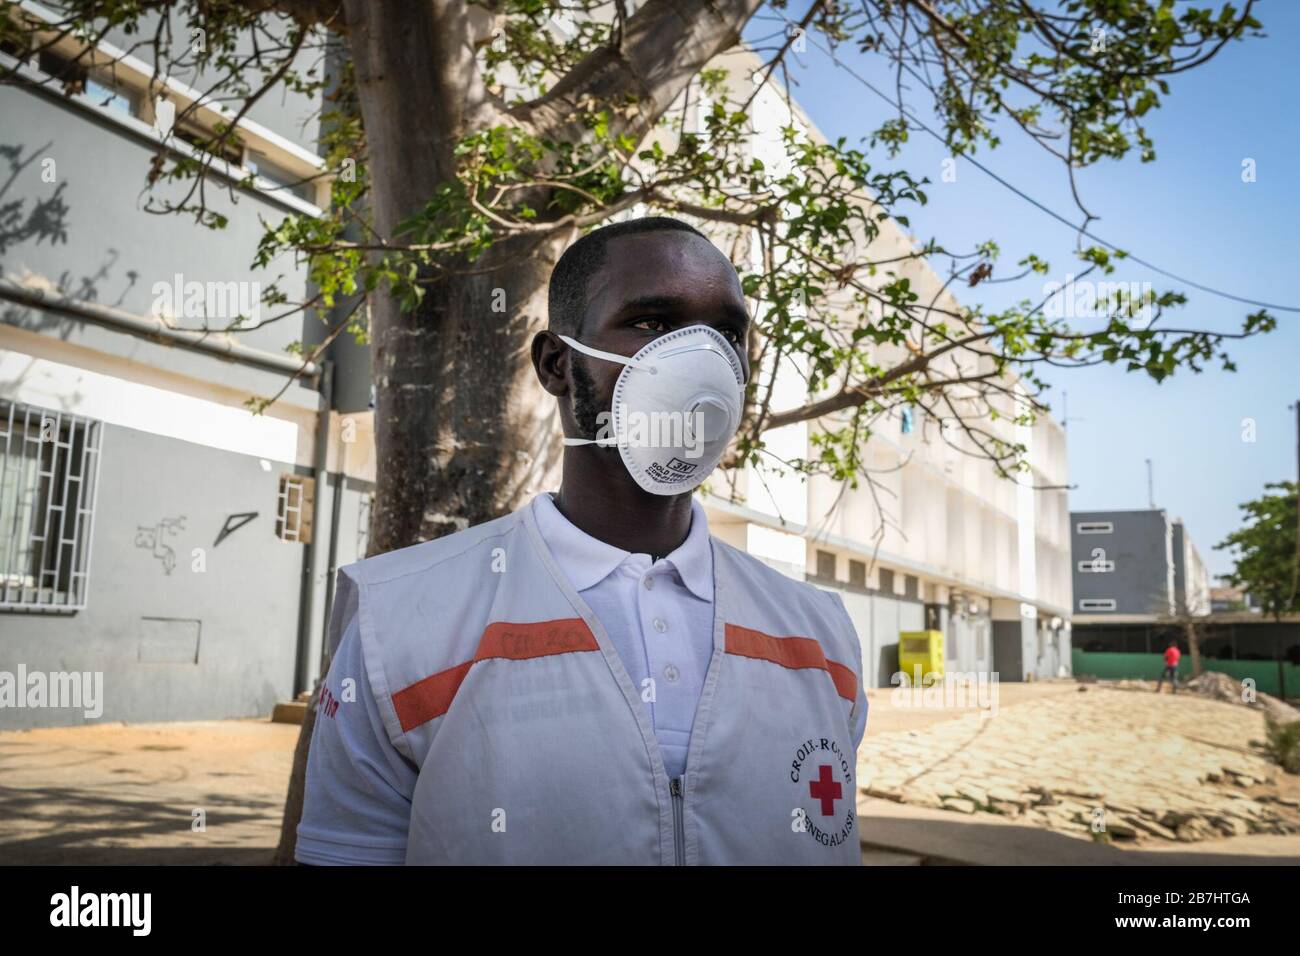 Dakar, Senegal. März 2020. (200316) -- DAKAR, 16. März 2020 (Xinhua) -- Foto vom 16. März 2020, zeigt einen senegalesischen Rotkreuz-Freiwilliger an der Cheikh Anta Diop Universität Dakar in Dakar, Senegal. Der Senegal, das am zweitstärksten betroffene Land in Afrika südlich der Sahara, hat 26 Fälle von COVID-19 gemeldet, darunter zwei Fälle, die für geheilt und aus dem Krankenhaus entlassen erklärt werden. Der senegalesische Präsident Macky Sall kündigte am 14. März an, alle öffentlichen Veranstaltungen auf senegalesischem Gebiet für einen Zeitraum von 30 Tagen als Maßnahme zur Bekämpfung von COVID-19 im westafrikanischen Land zu verbieten. Kredit: Xinhua/Alamy Live News Stockfoto